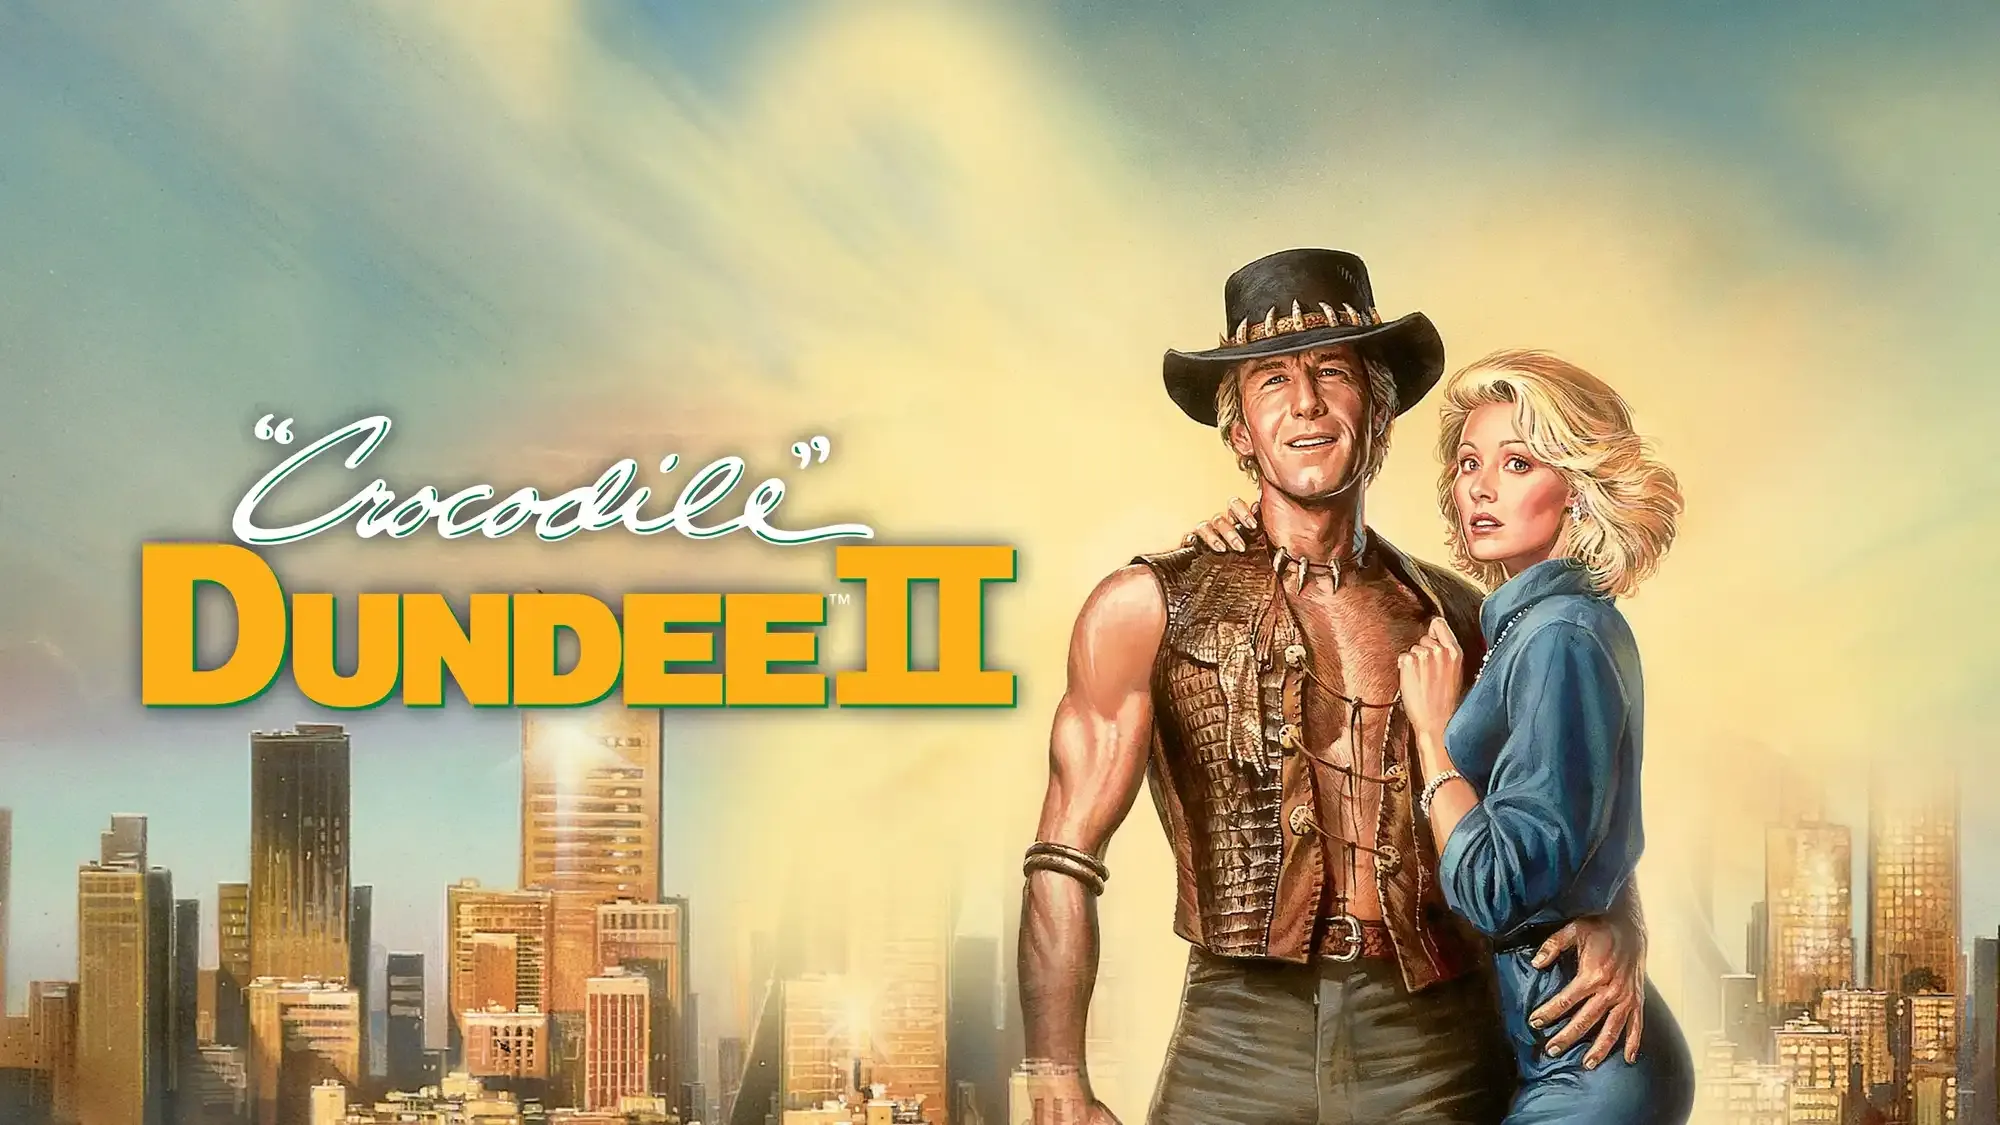 Crocodile Dundee II movie review